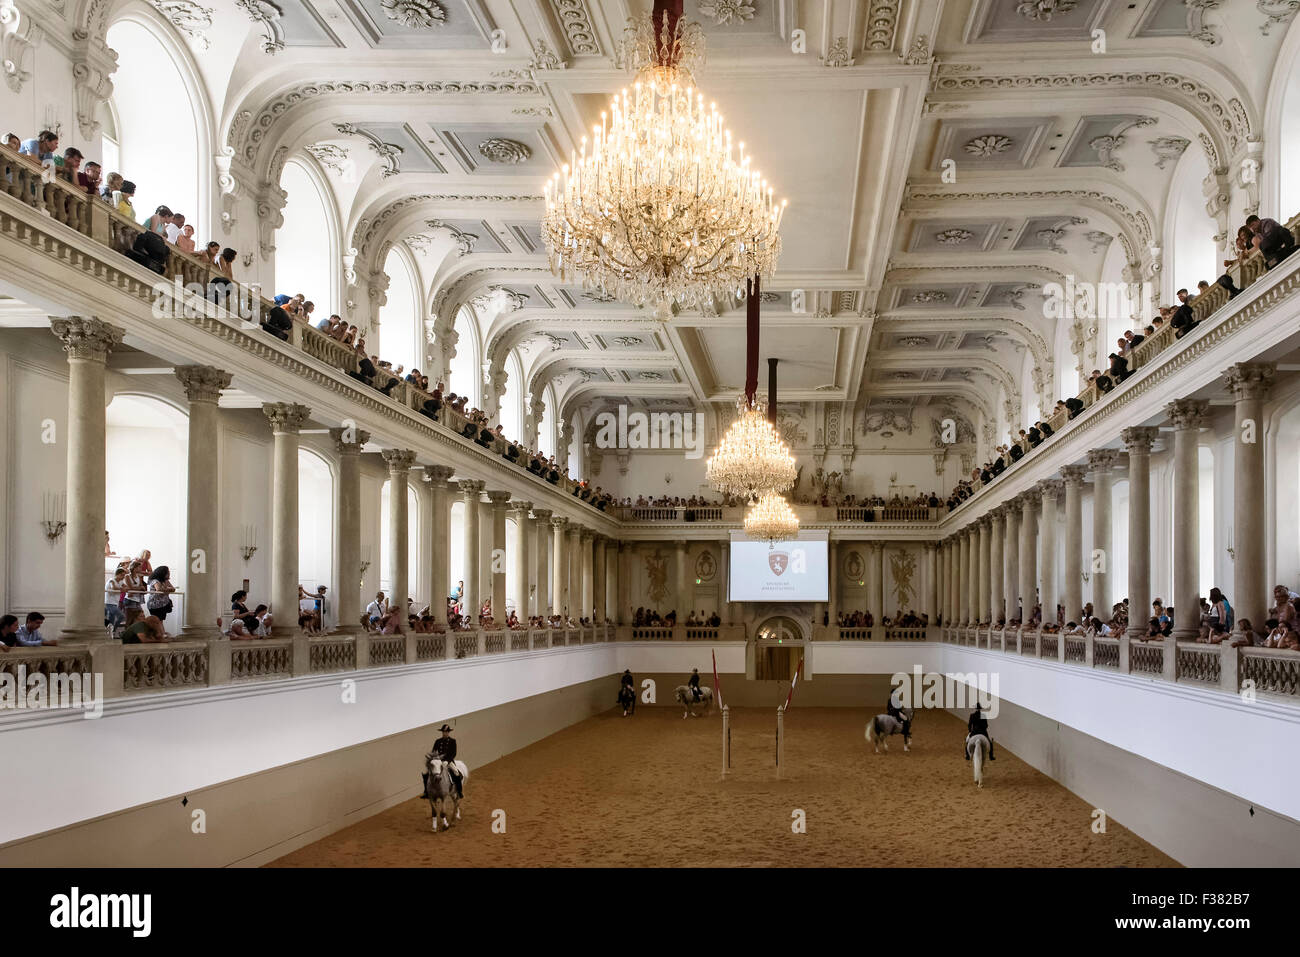 Spanische Hofreitschule beim Training im Barocksaal, Wien, Österreich, Welterbe Stockfoto